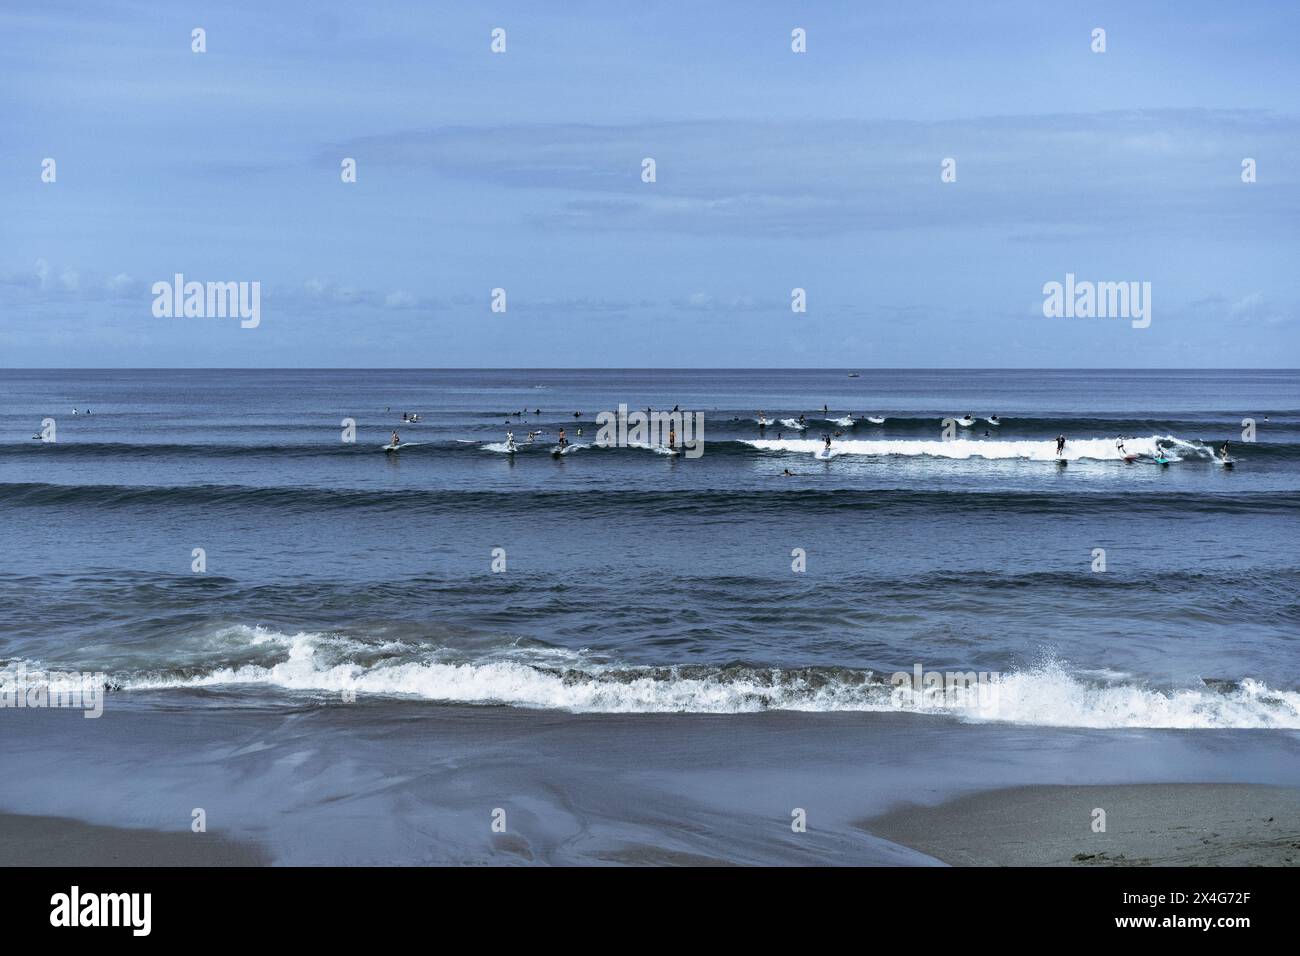 Molti surfisti catturano le onde nell'oceano, Bali Foto Stock